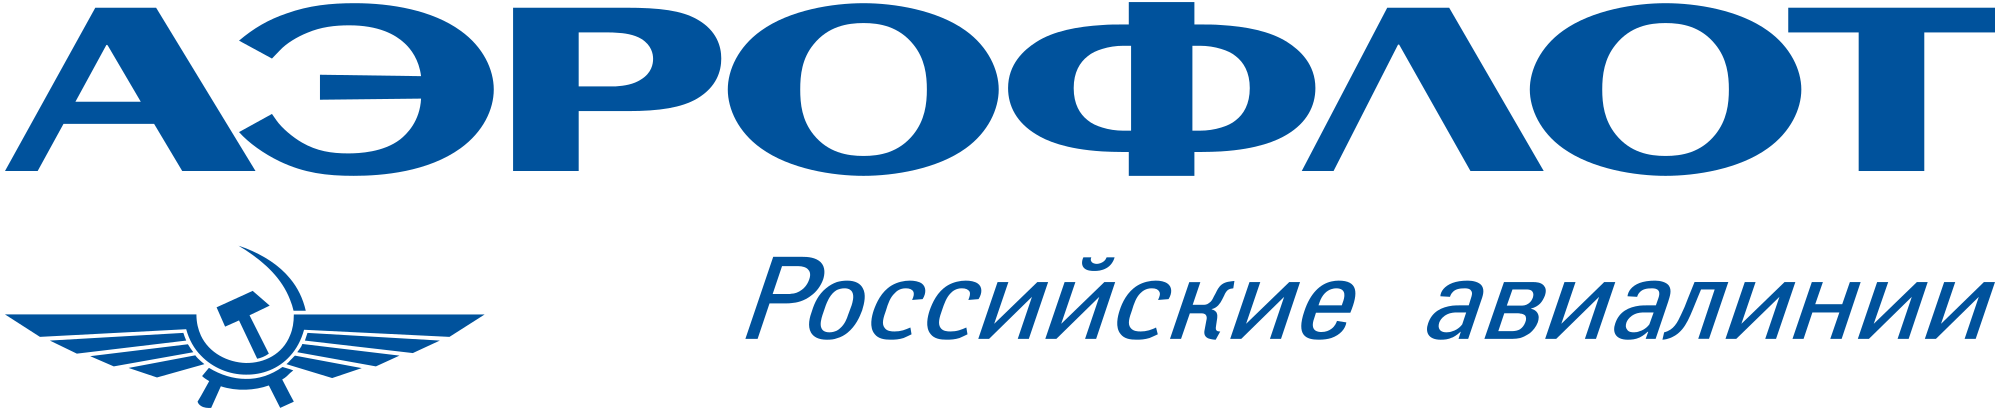 Aeroflot Logo - Aeroflot Logo